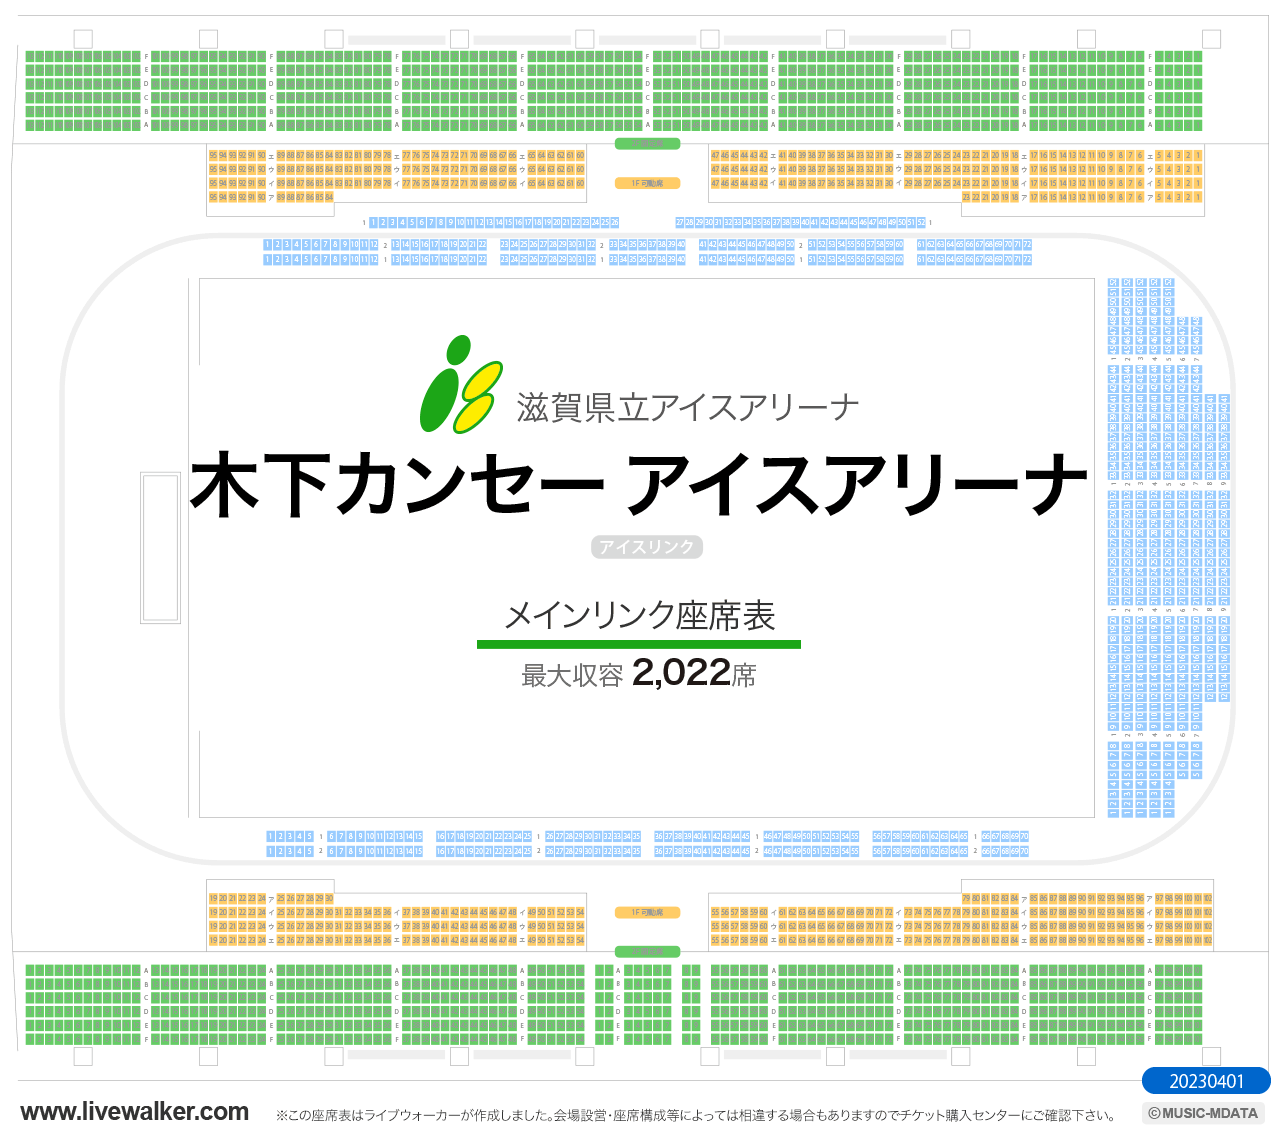 滋賀県立アイスアリーナメインリンクの座席表